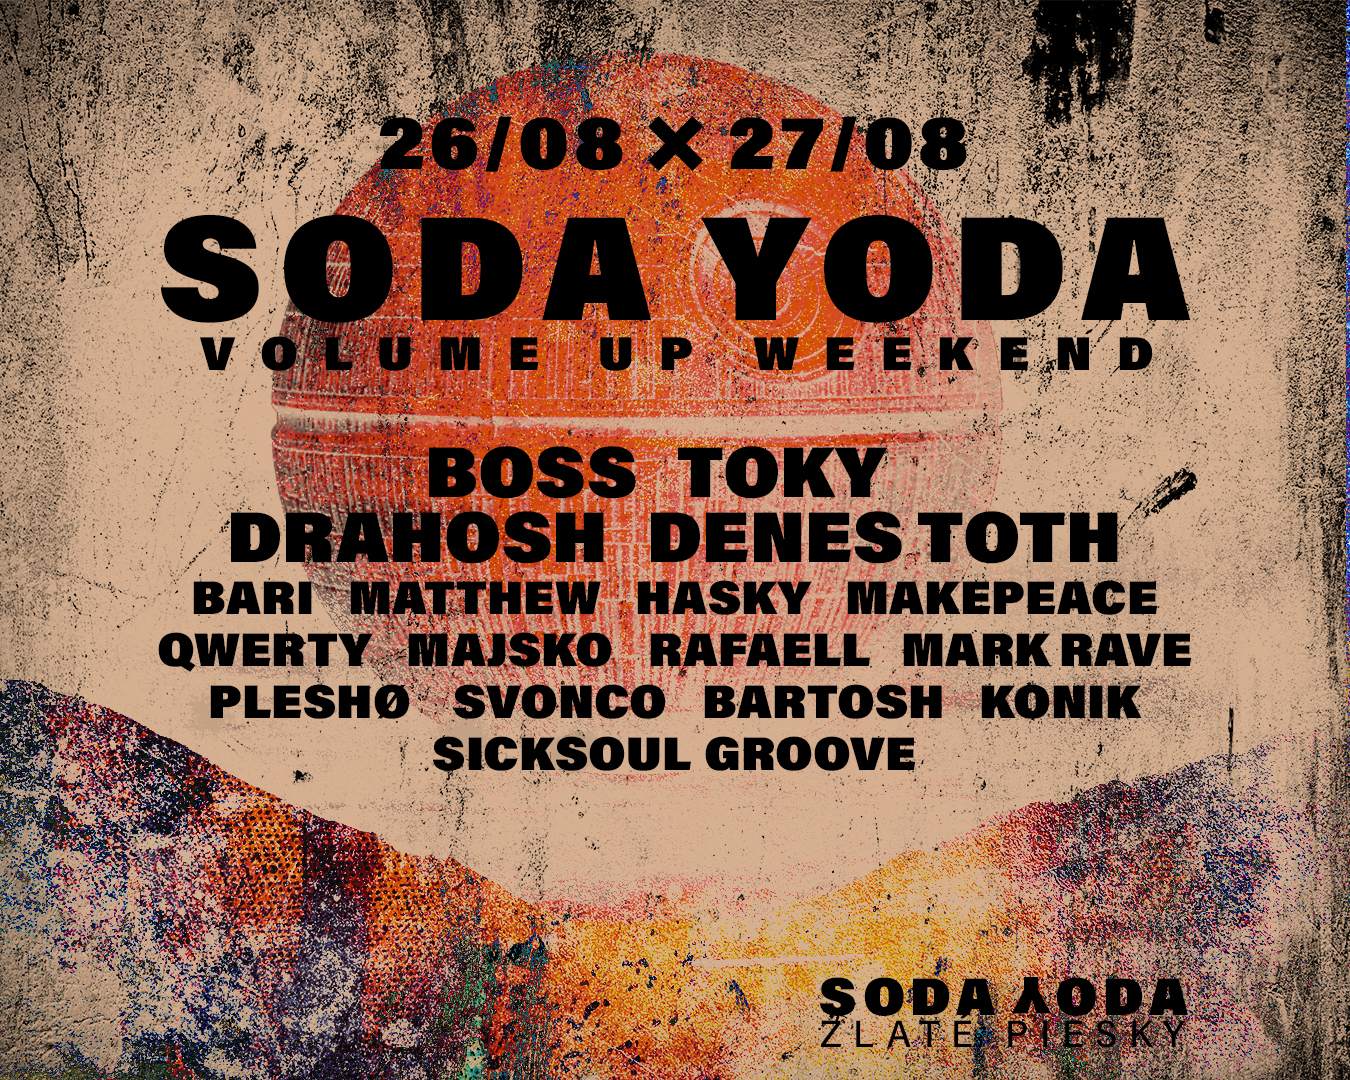 SODA YODA Volume Up Weekend - フライヤー表